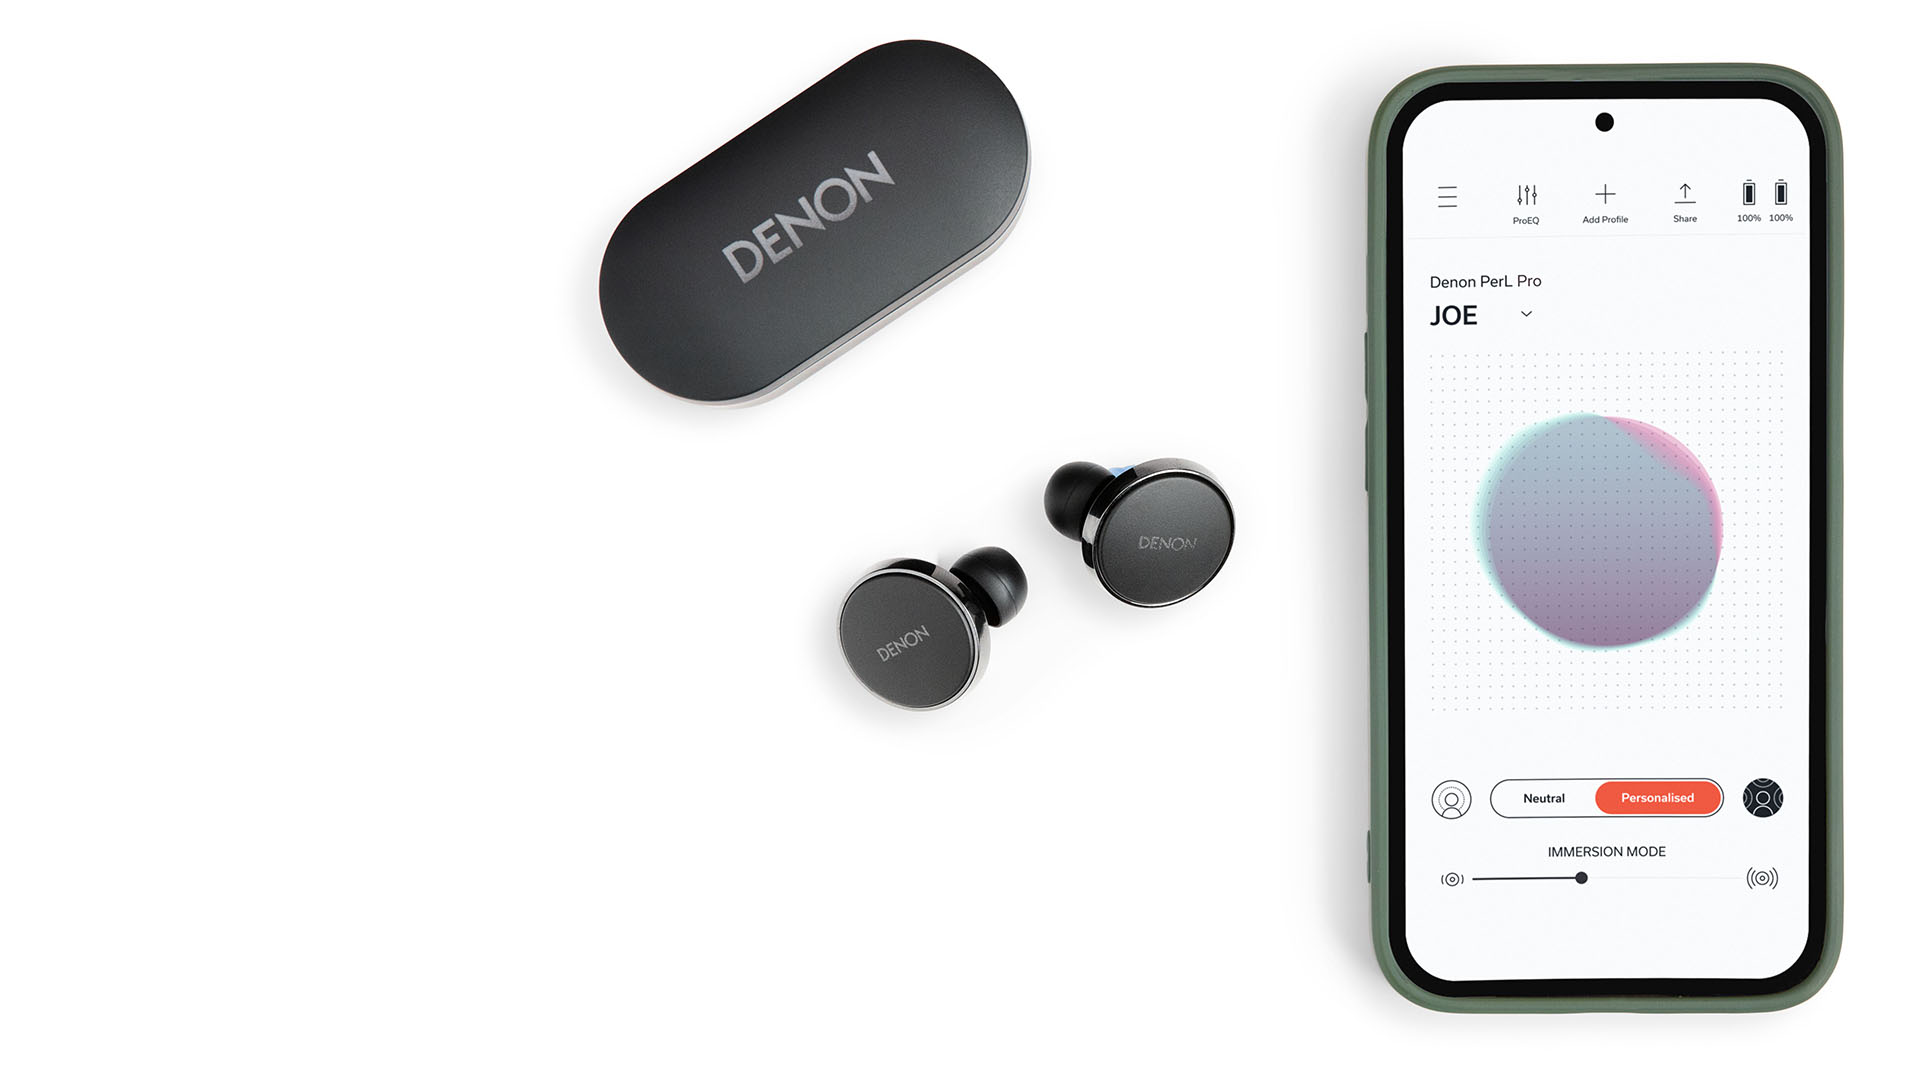 【週末限定価格・新品・未開封品】DENON PerL Pro特徴Bluetooth